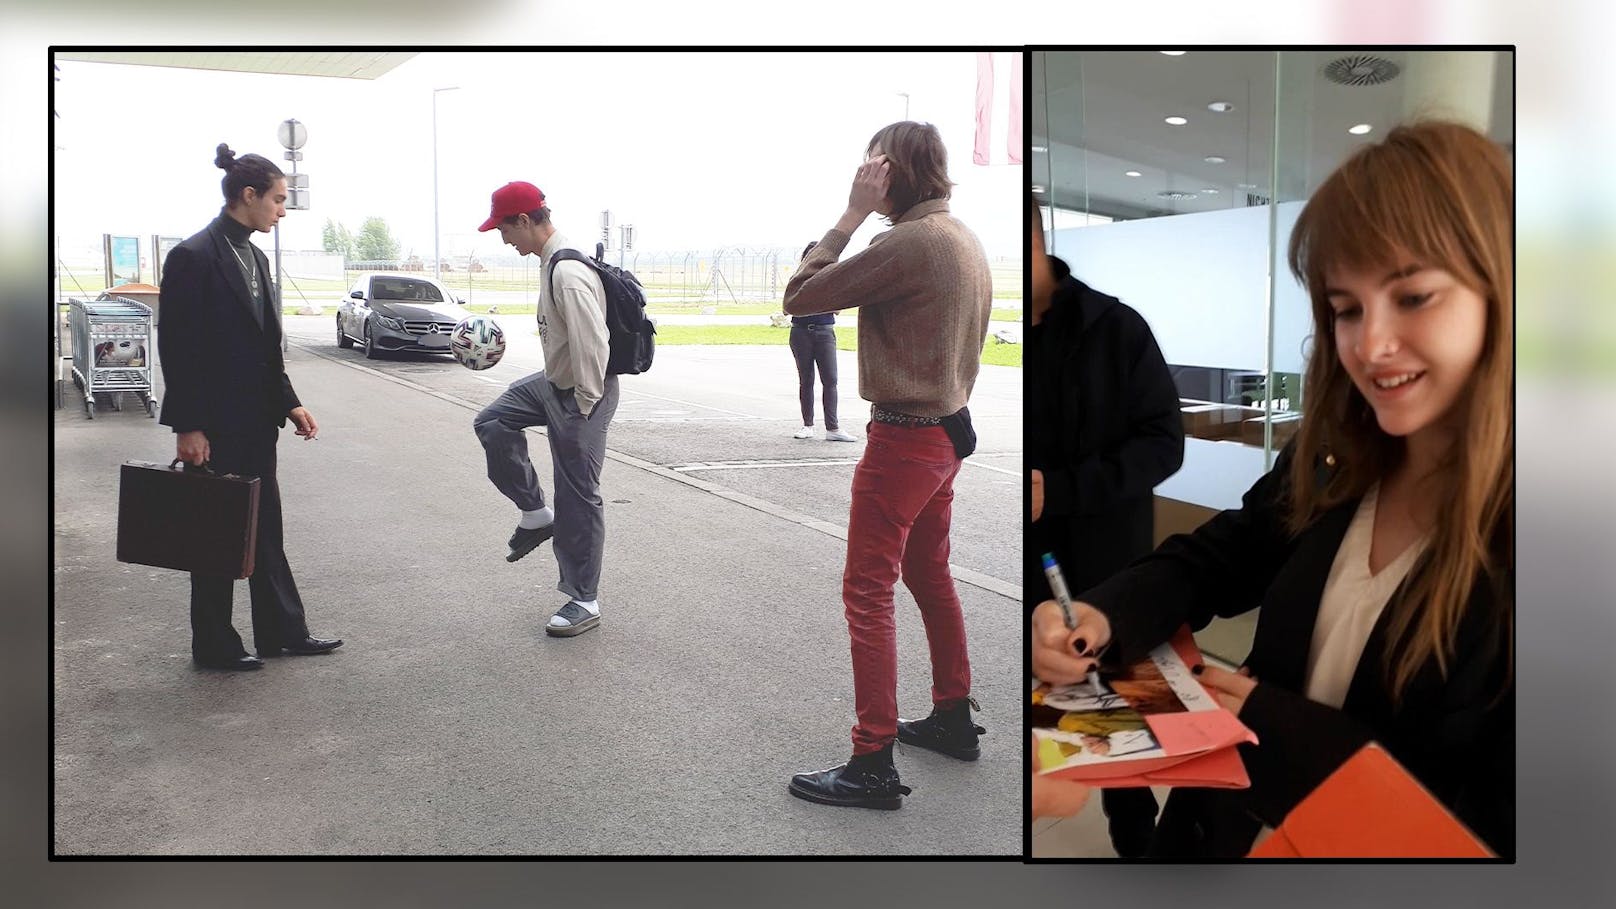 Um sich die Zeit zu vertreiben, kickte die Band am Wiener Flughafen und verteilte Autogramme.